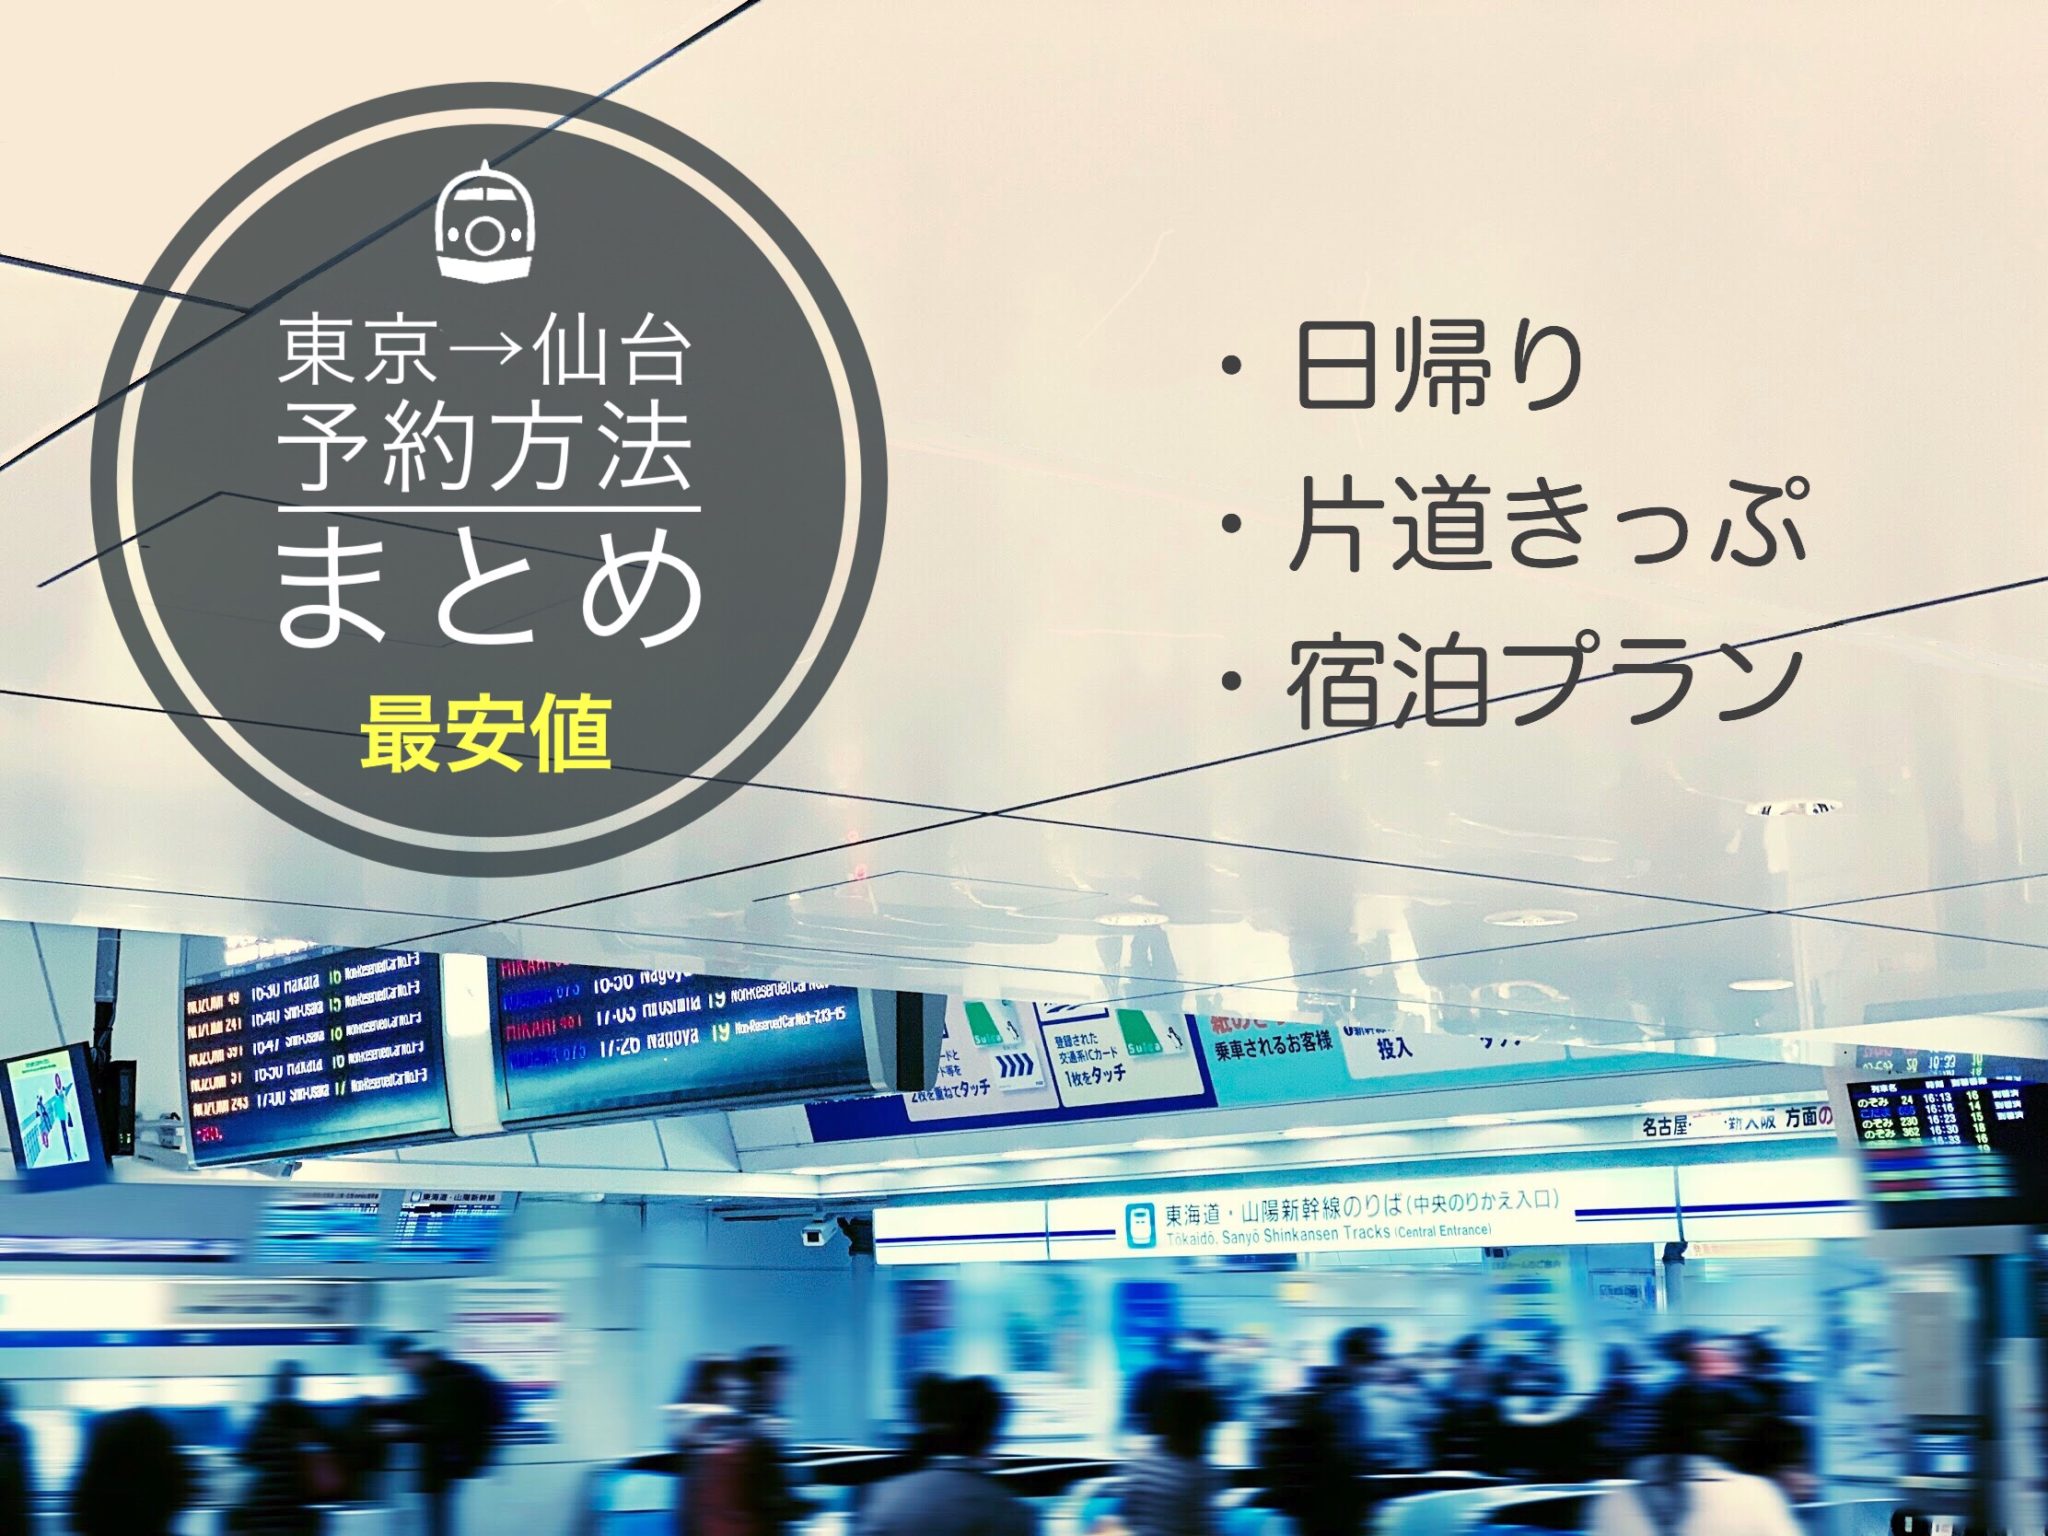 東京 仙台新幹線の料金 時間は 格安チケット予約方法まとめ 新幹線ハック